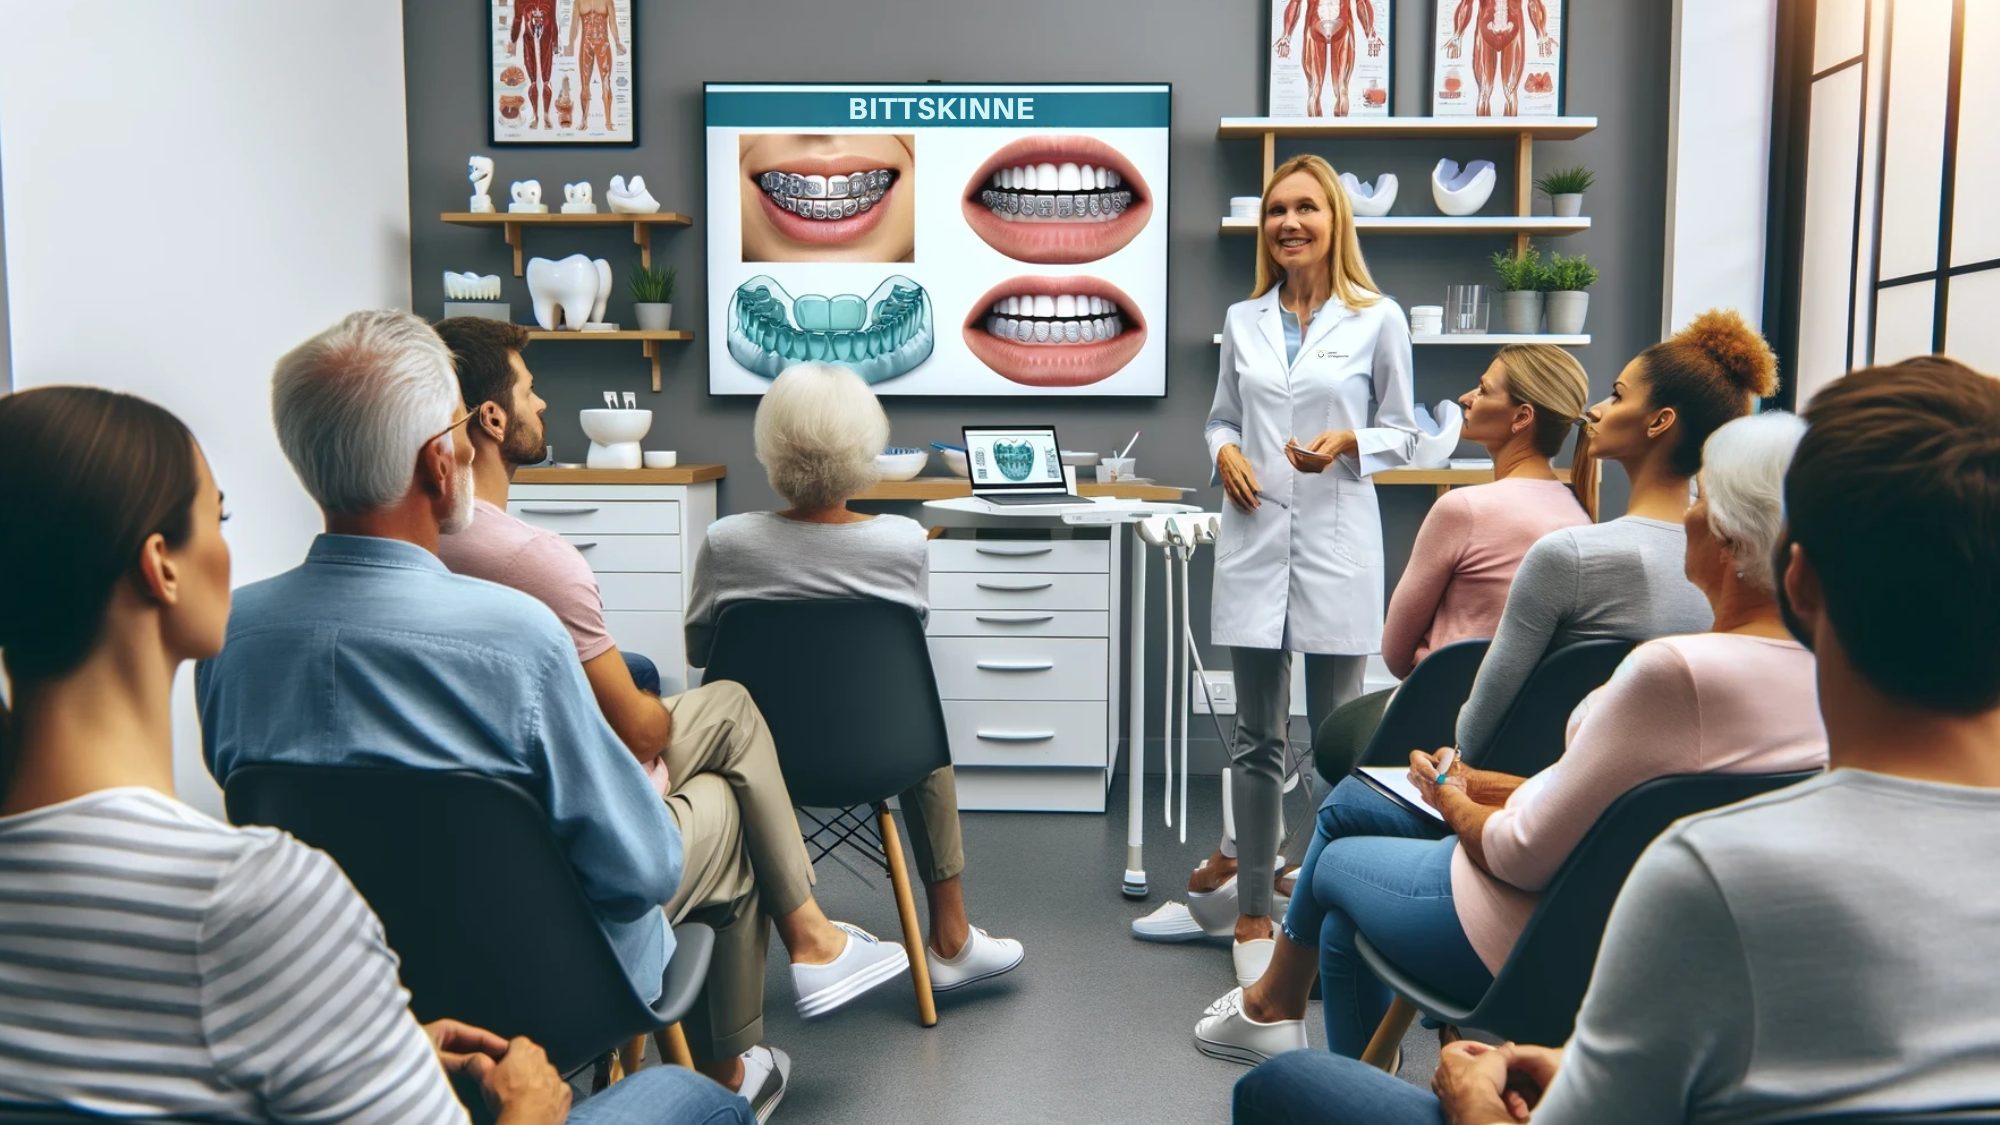 En tannlege forklarer om tannbeskyttere til lyttende pasienter i en klinikk.